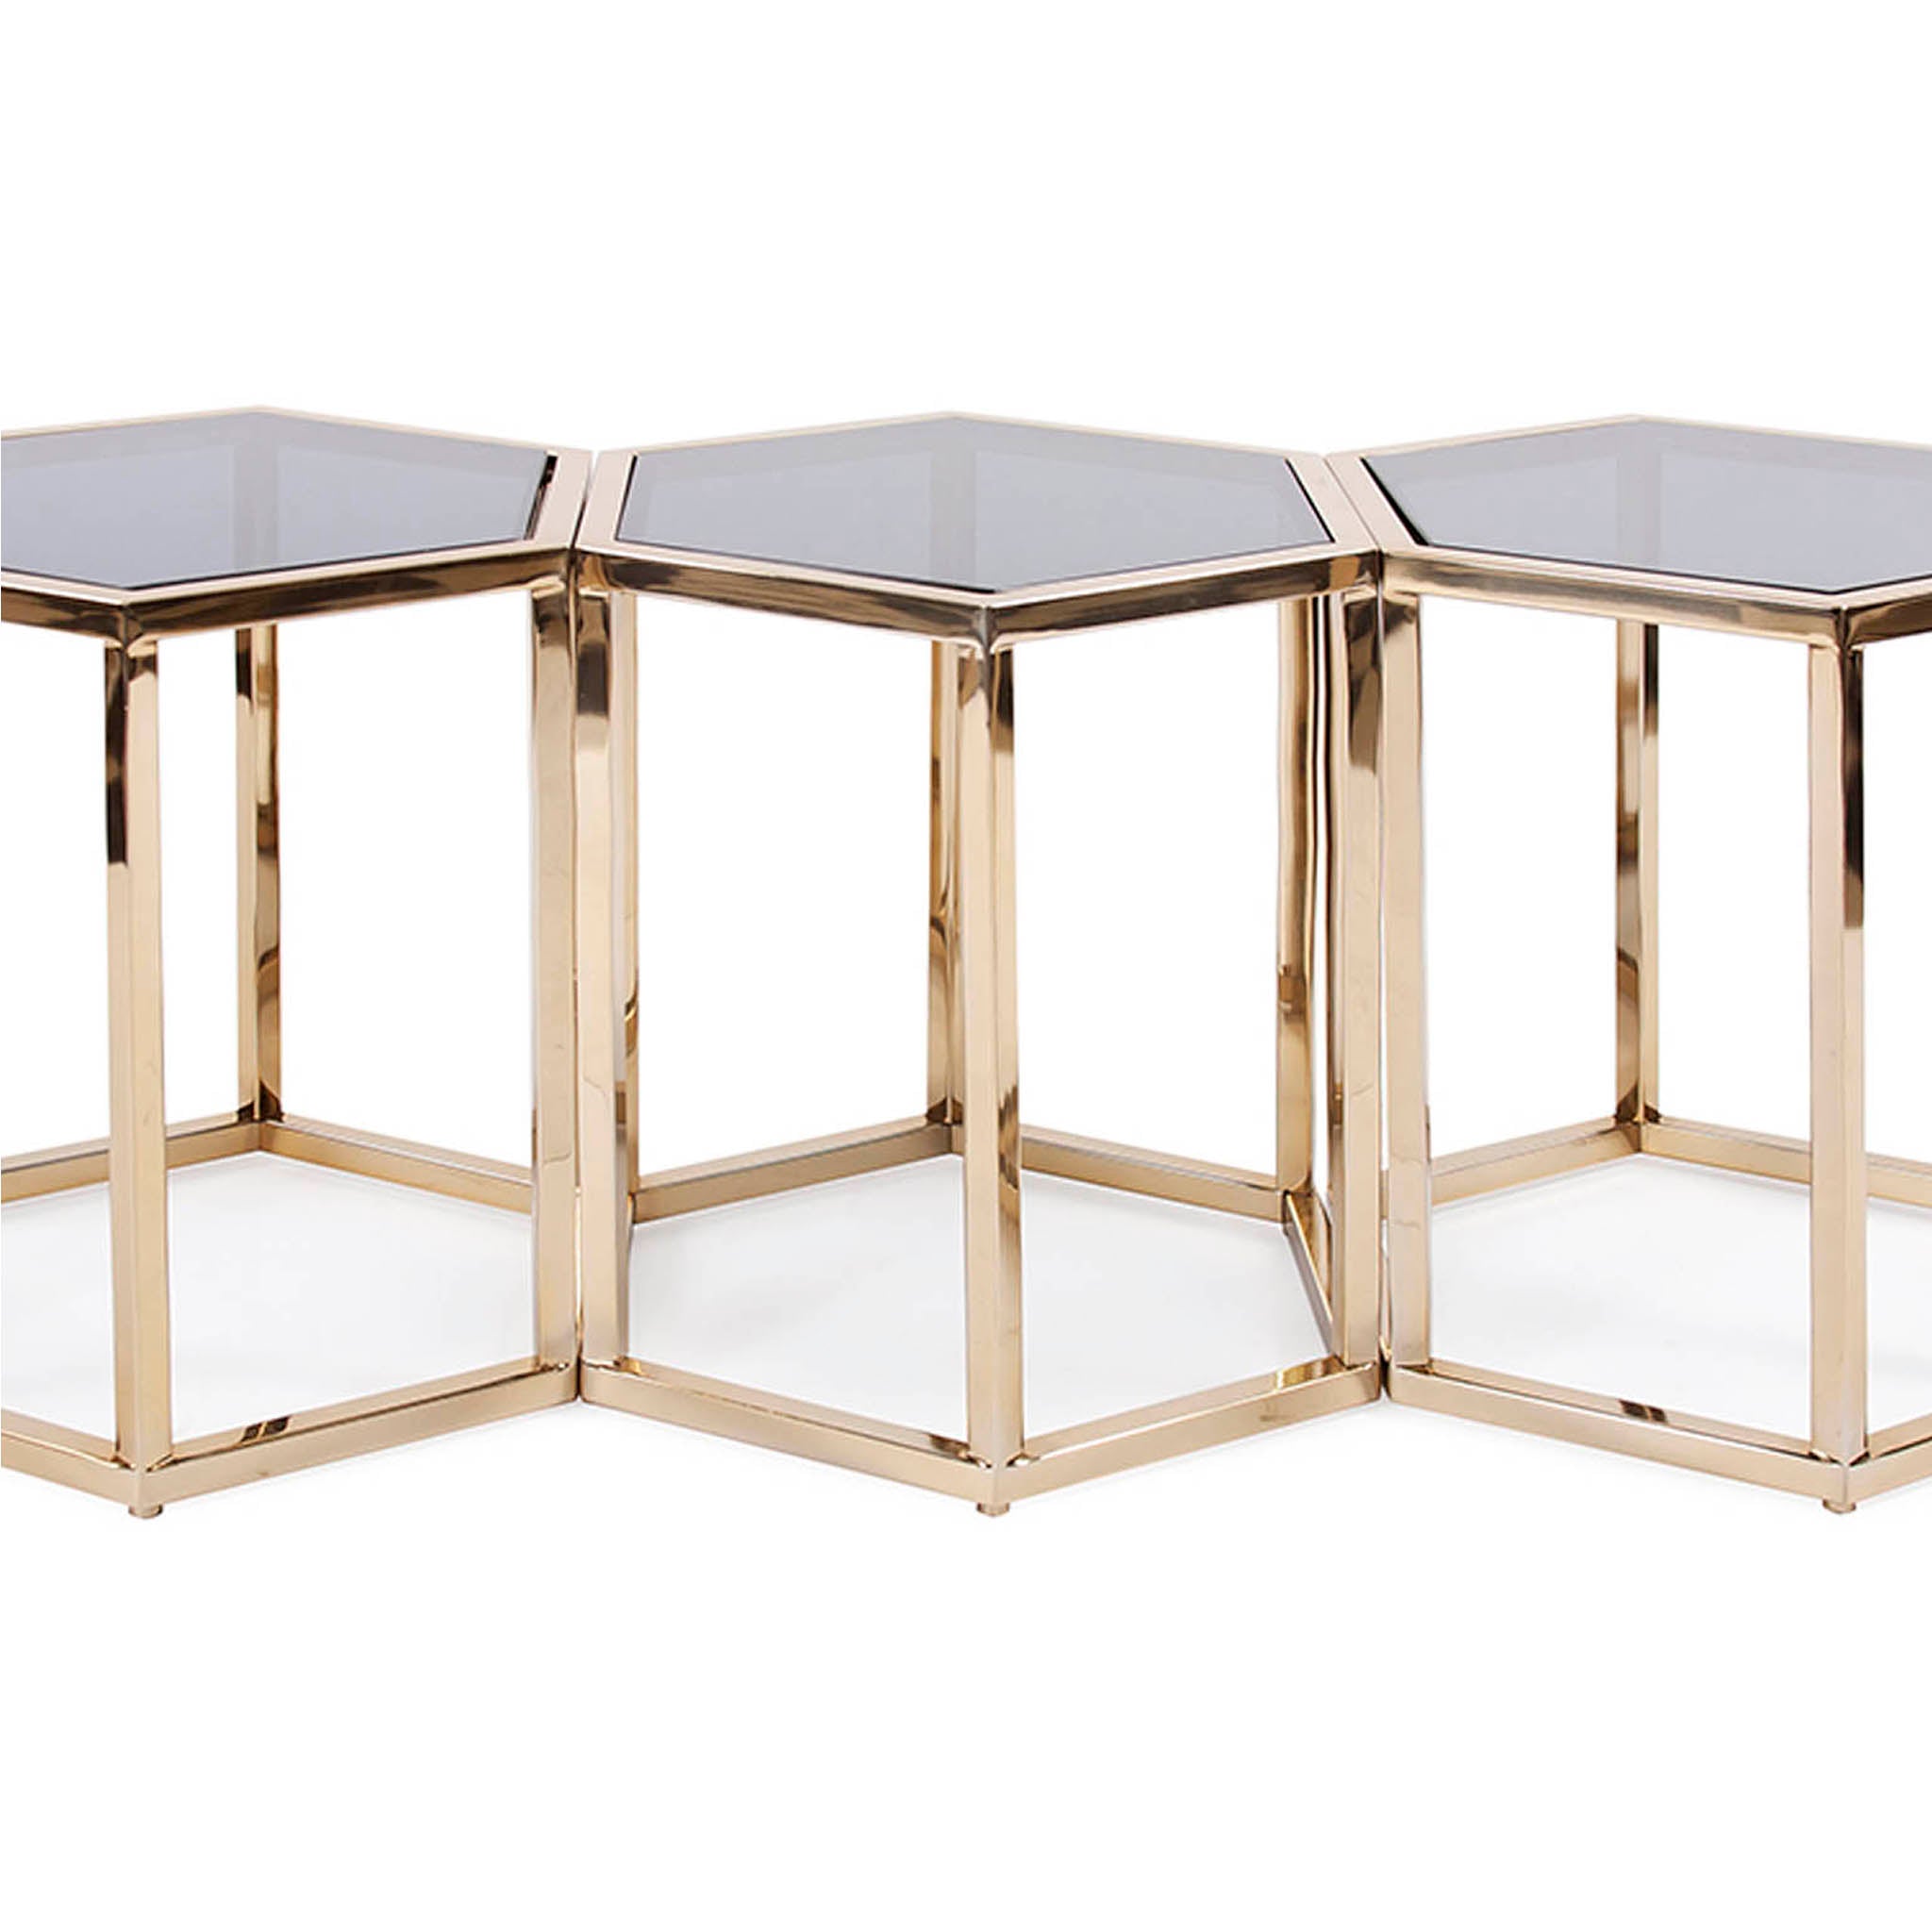 Noelia Tables, set of three